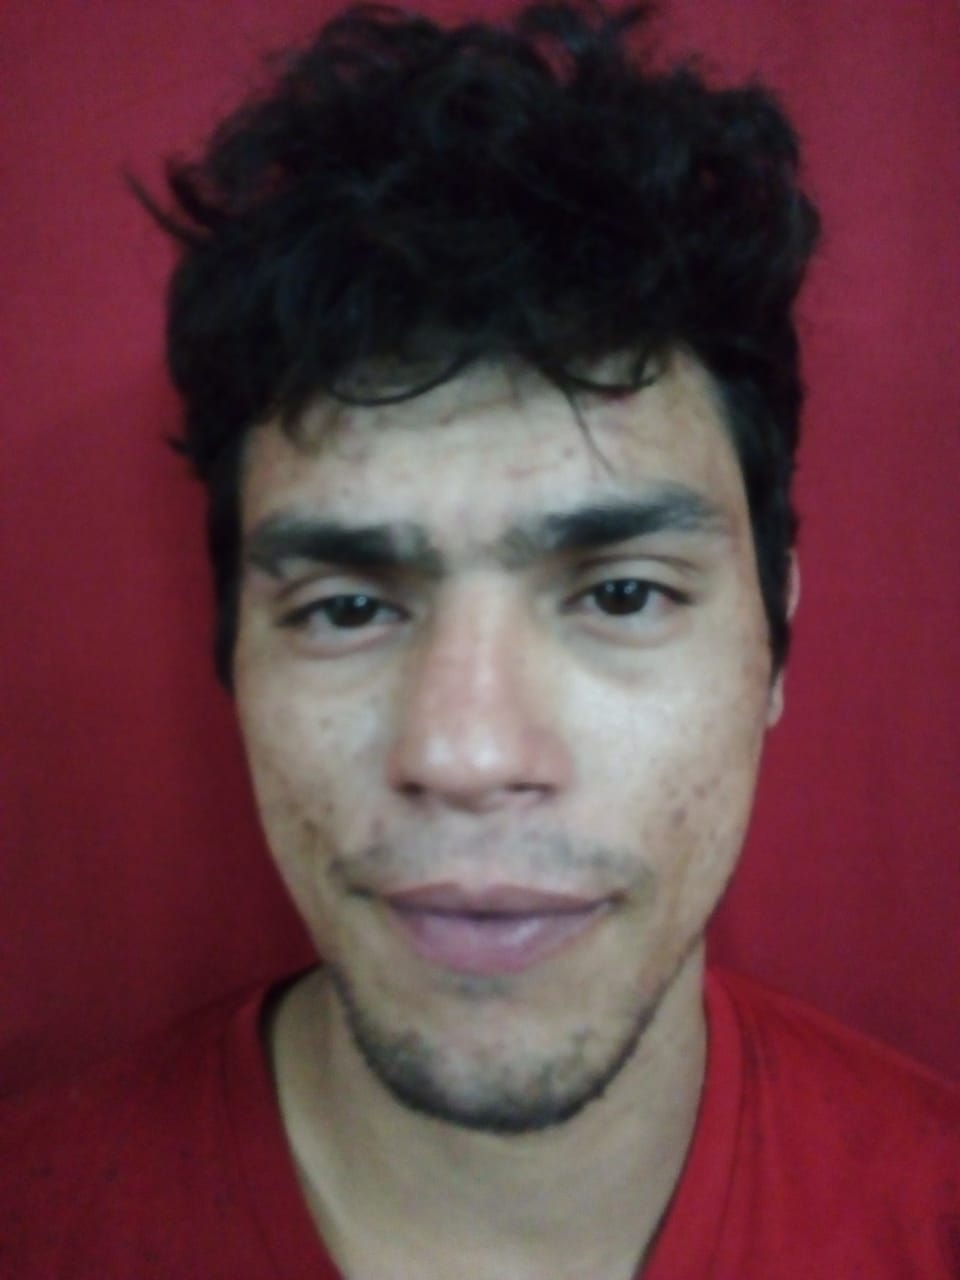 Aún continúa libre el otro fugado, identificado como Héctor González (22). Foto: Gentileza.